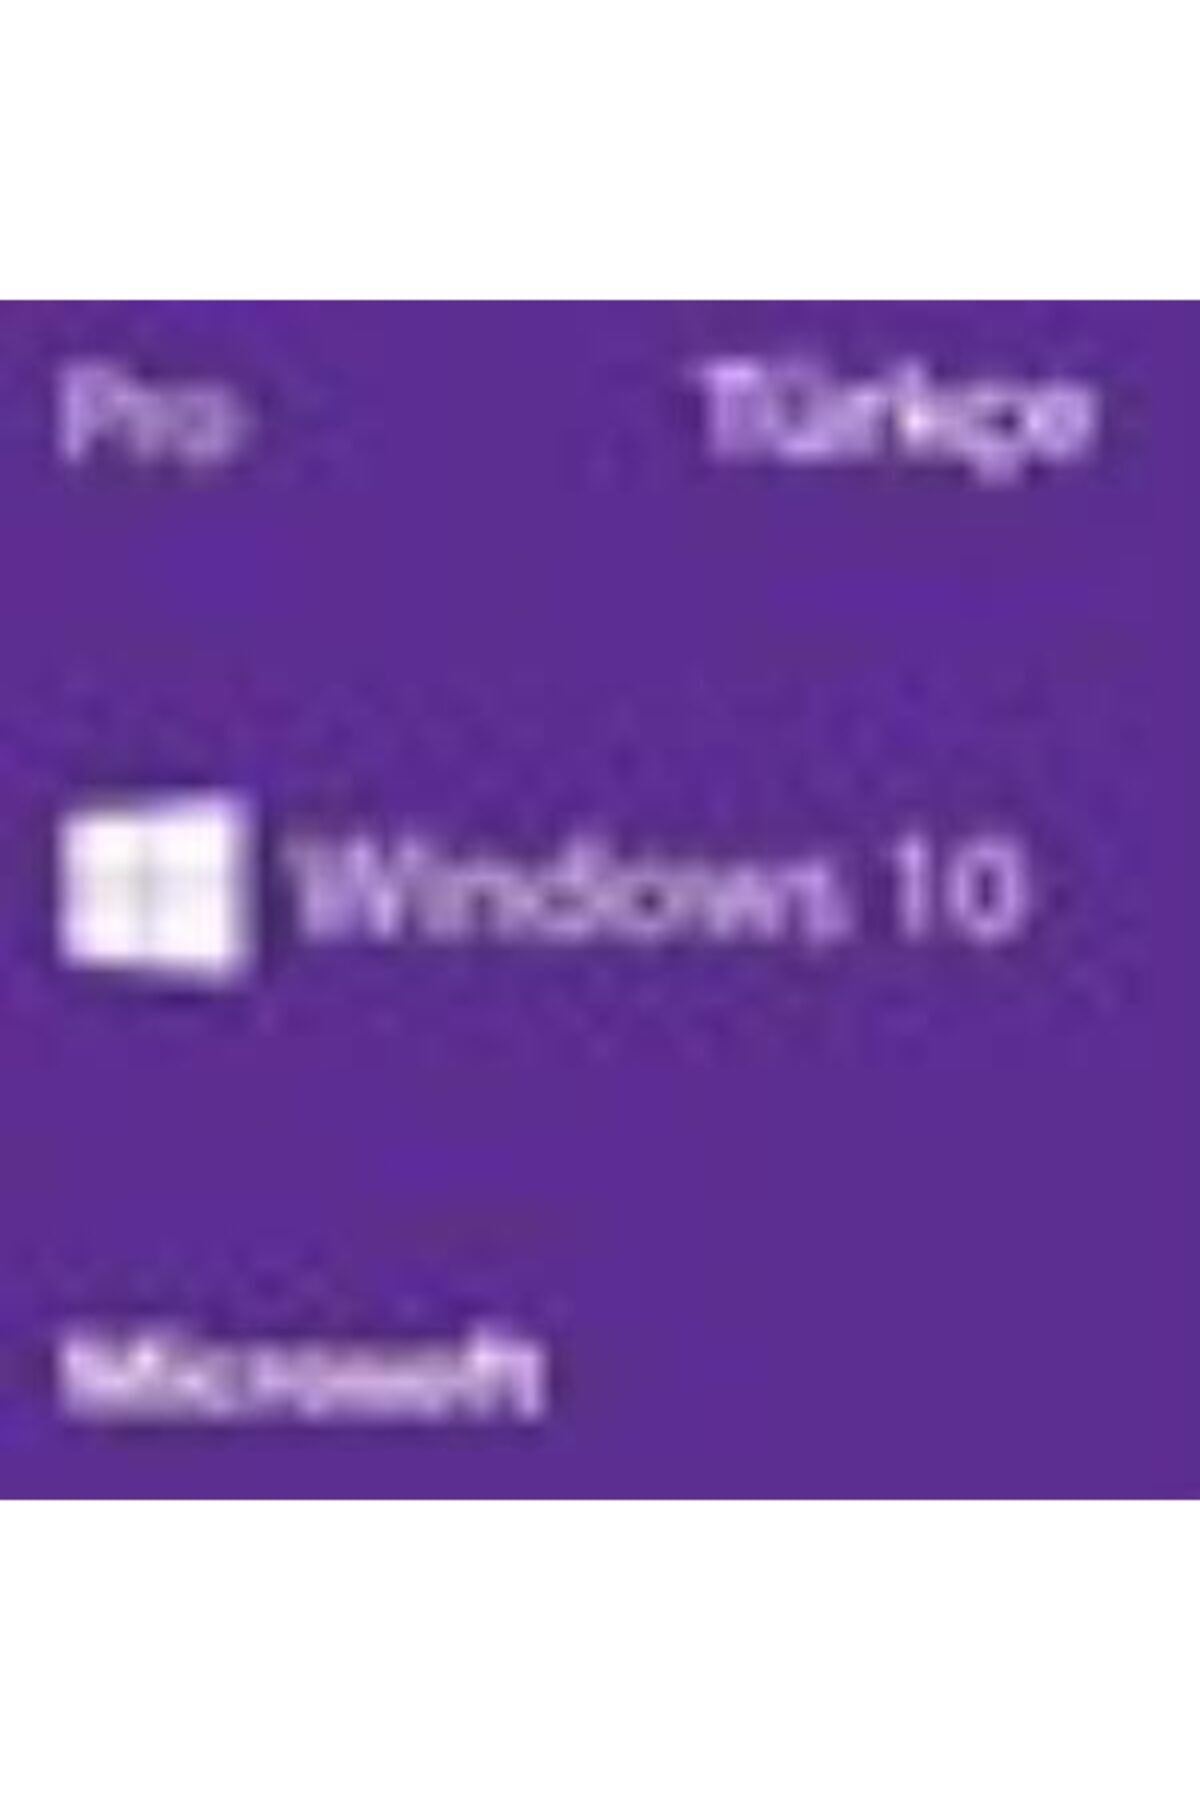 Microsoft Windows 10 Pro Türkçe Oem (64 Bit) Fqc-08977